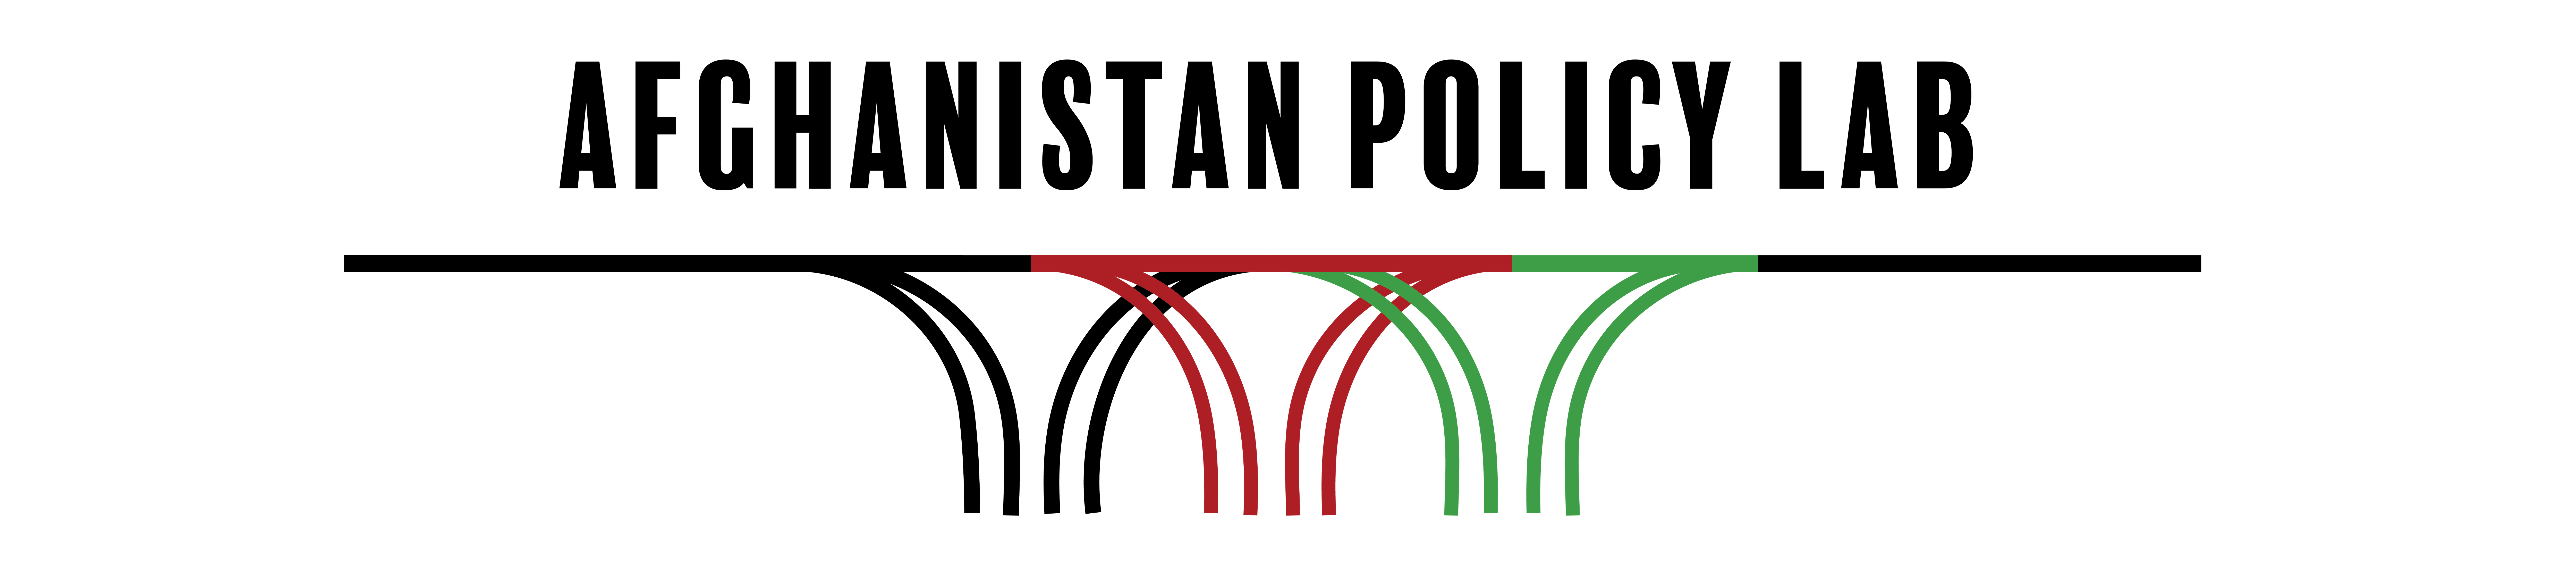 Afghan Policy Lab logo